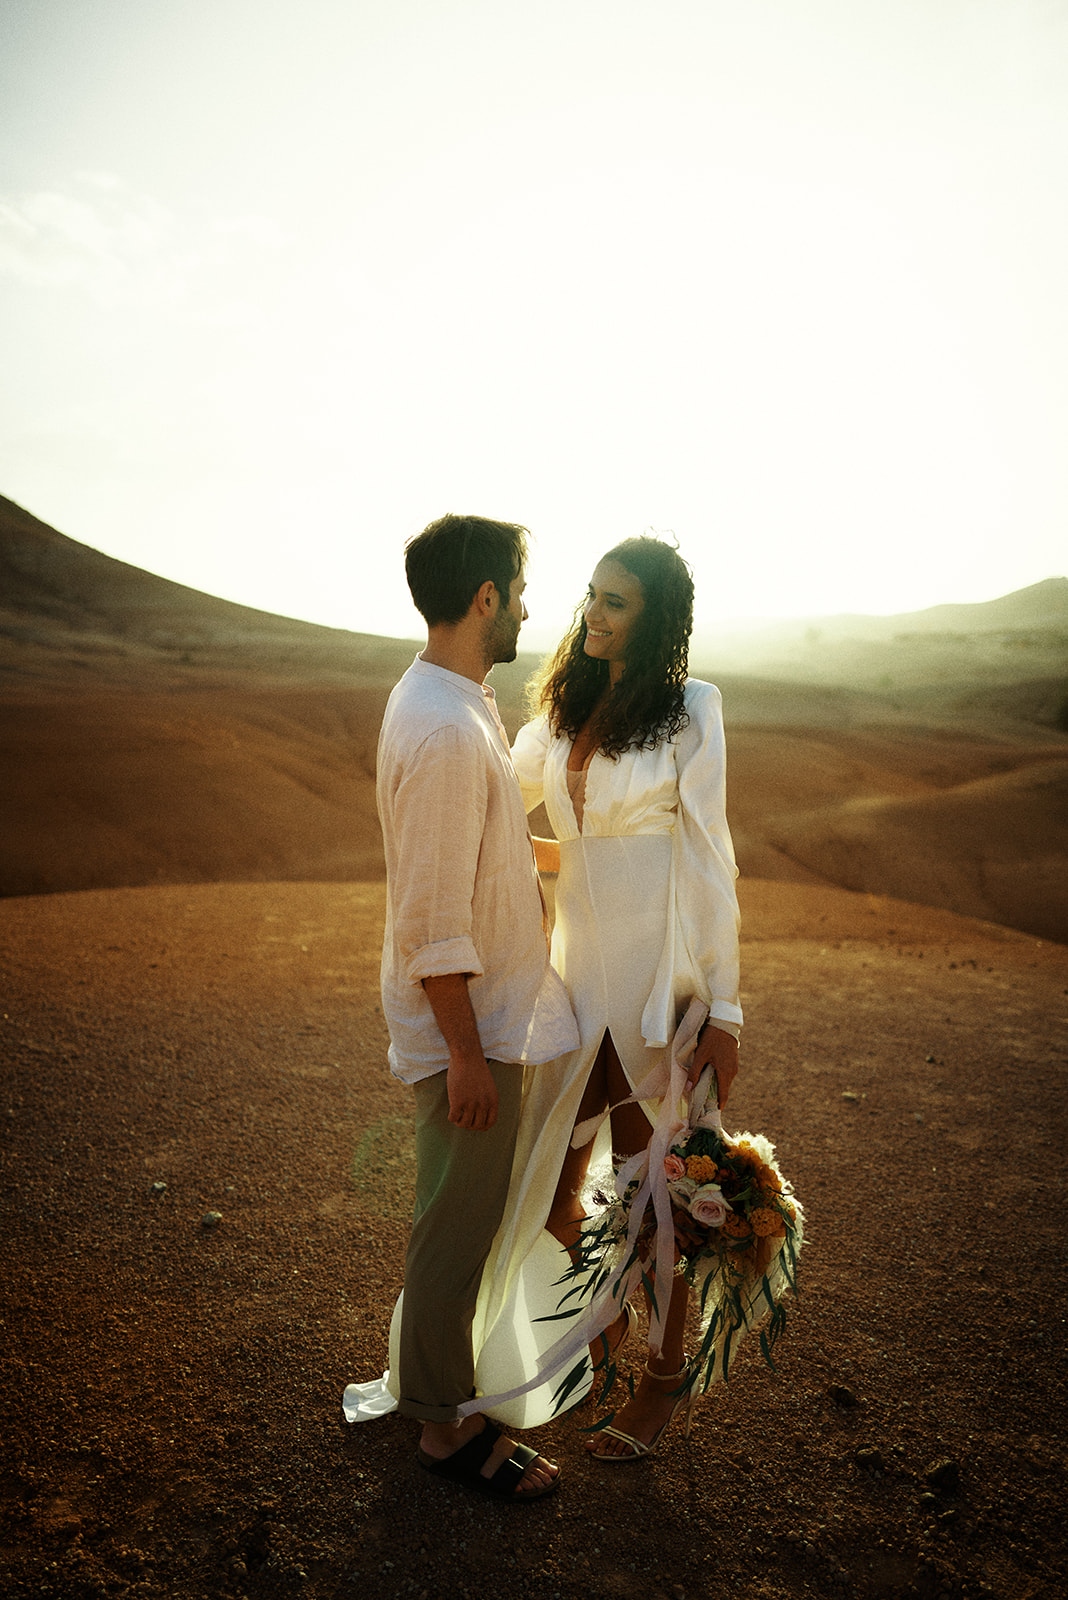 Wedding in Agafay, the desert close to Marrakech, Morocco - Intro